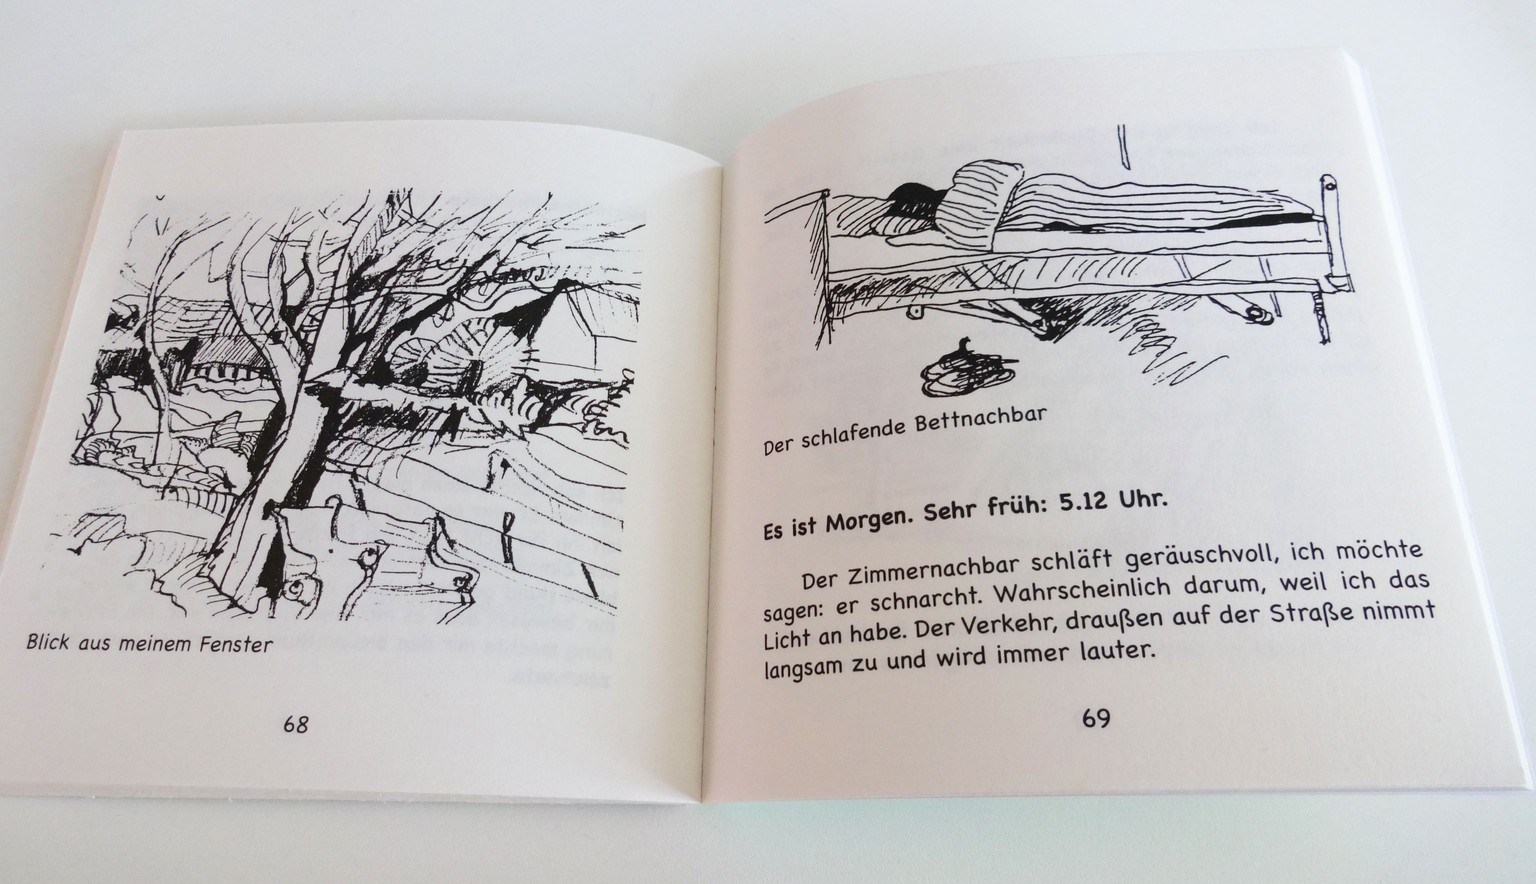 Die Zeichnungen, die Dittmann in der Klink produziert hat, sowie seine gesamte Lebensgeschichte werden später von einem kleinen Verlag als Buch herausgebracht.&nbsp;